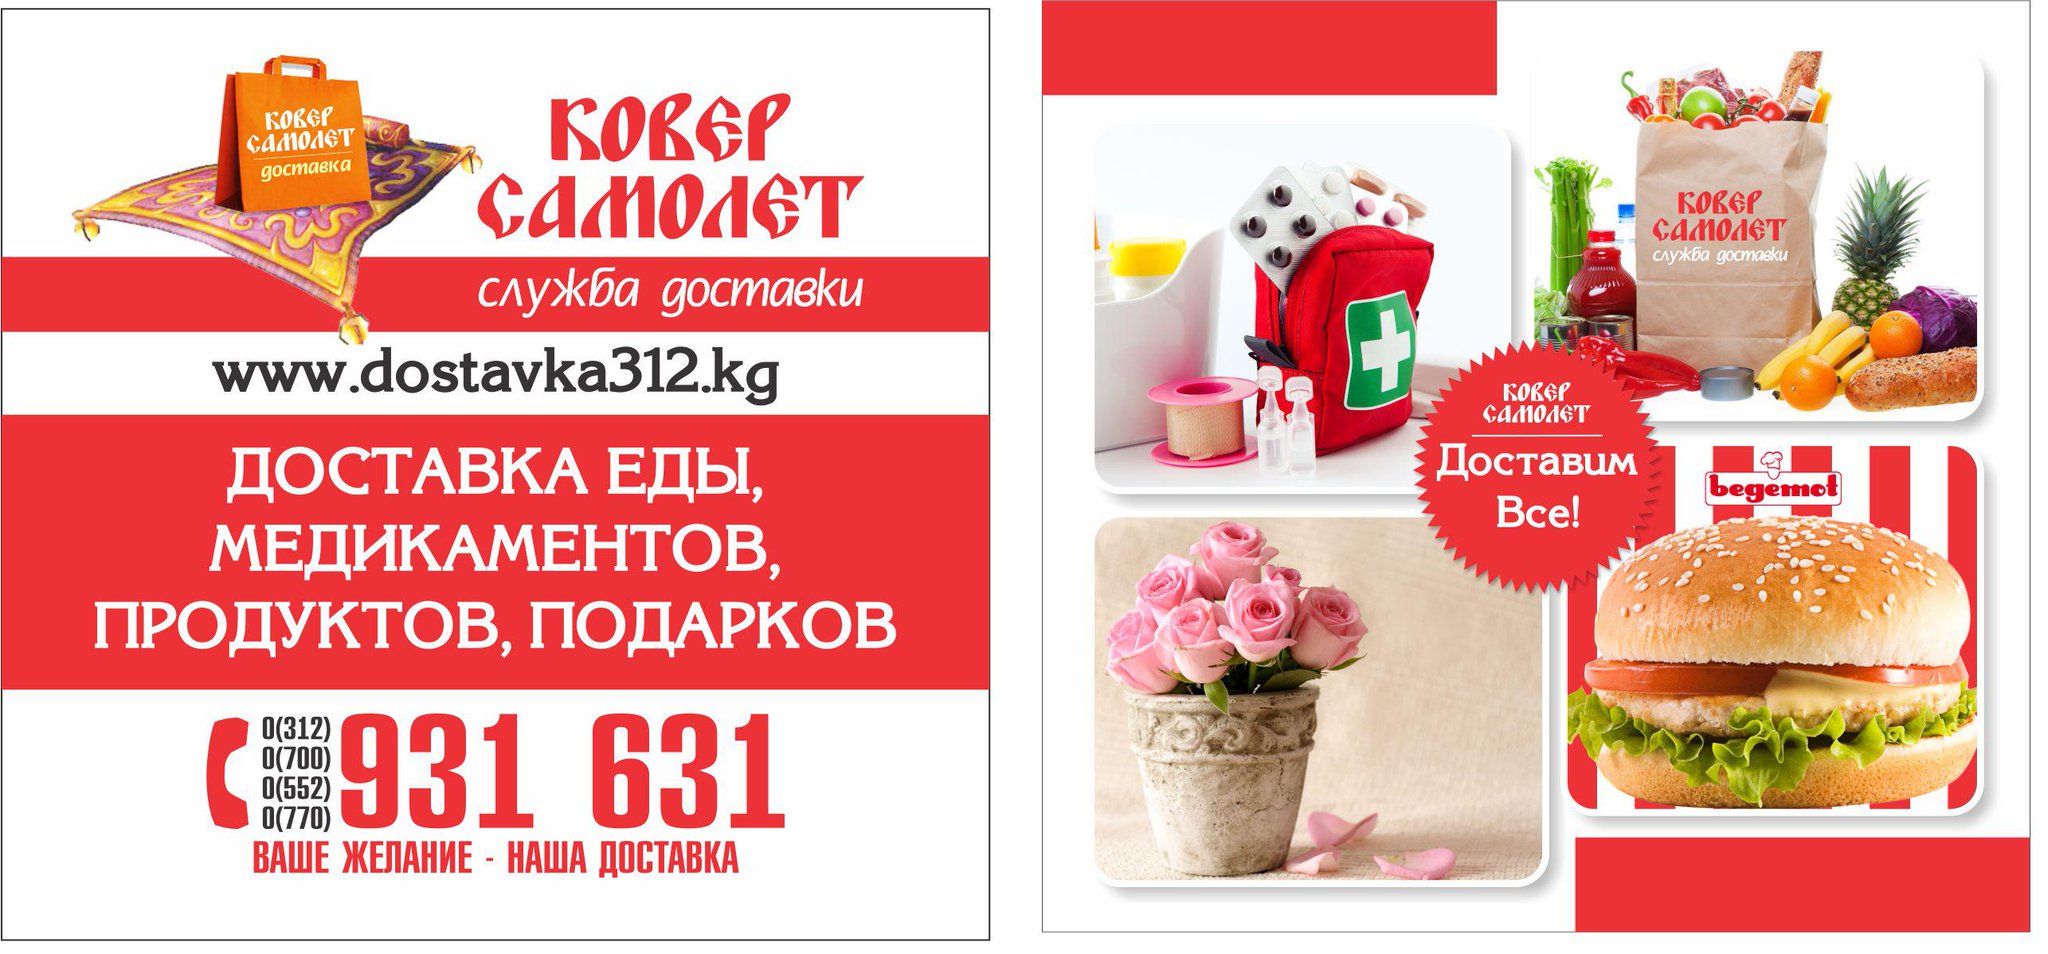 Доставка продуктов - рейтинг 2020 в москве